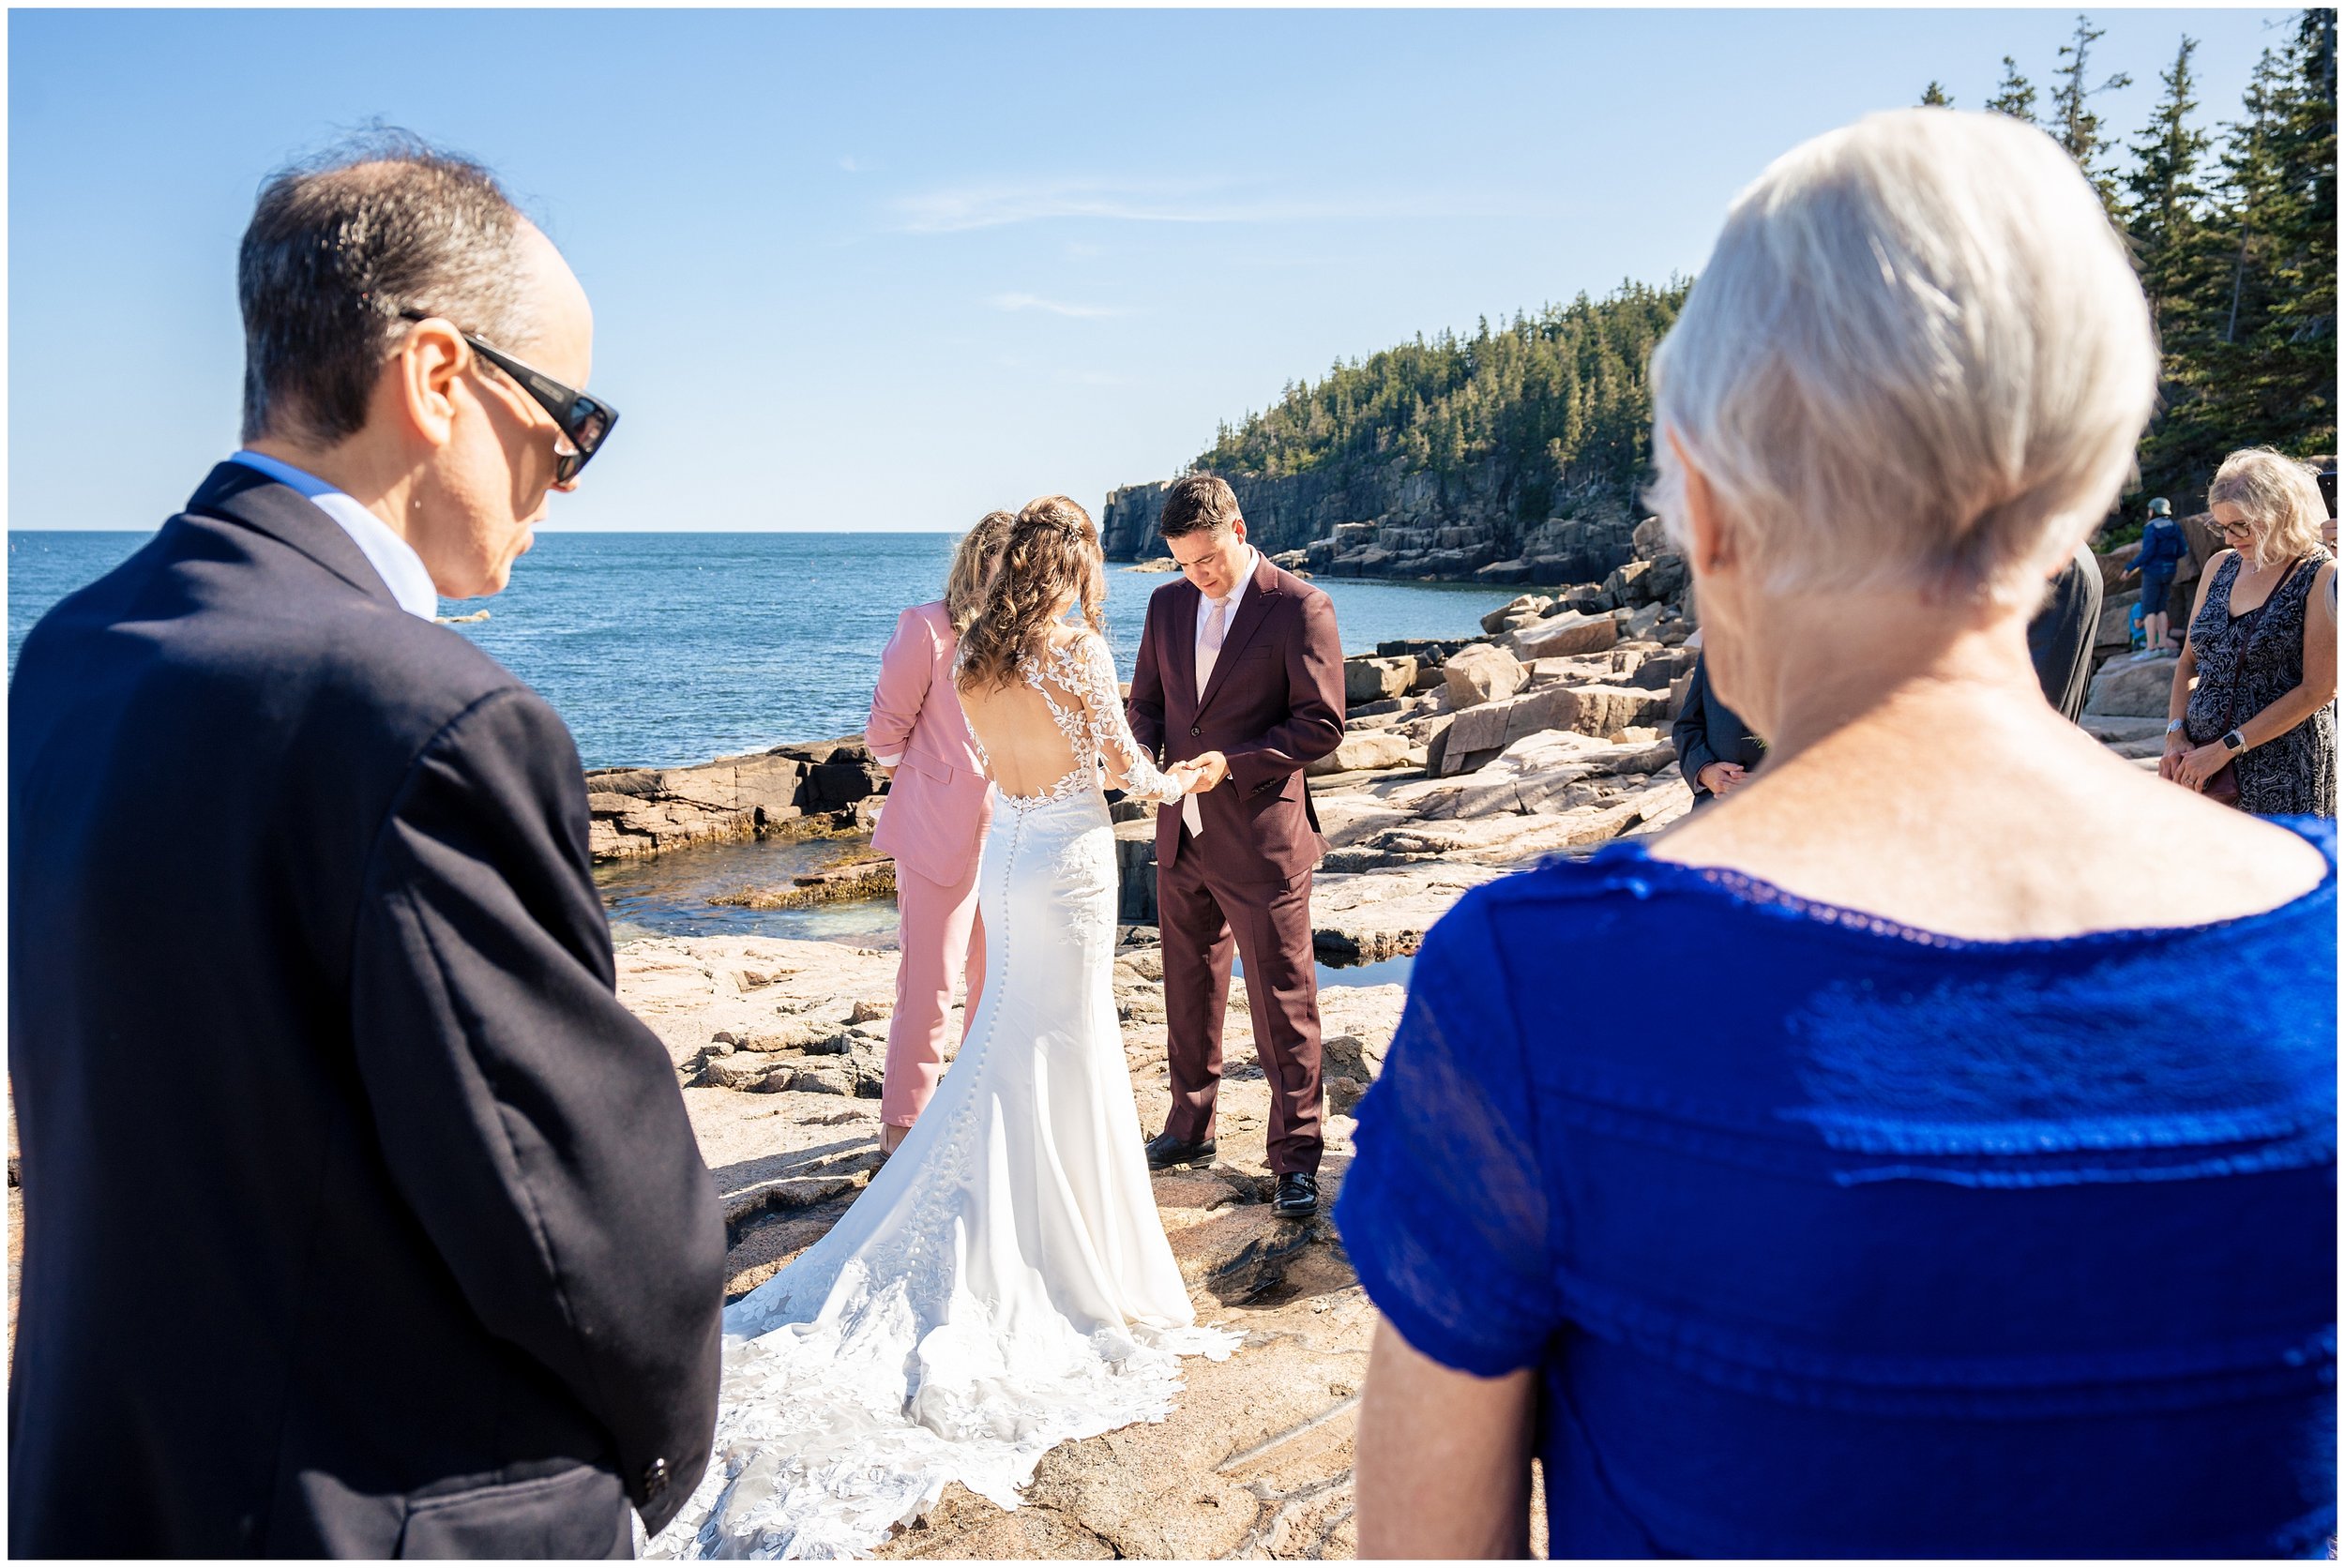 Acadia National Park Wedding Photographers, Bar Harbor Wedding Photographers, Two Adventurous Souls- 082423_0032.jpg